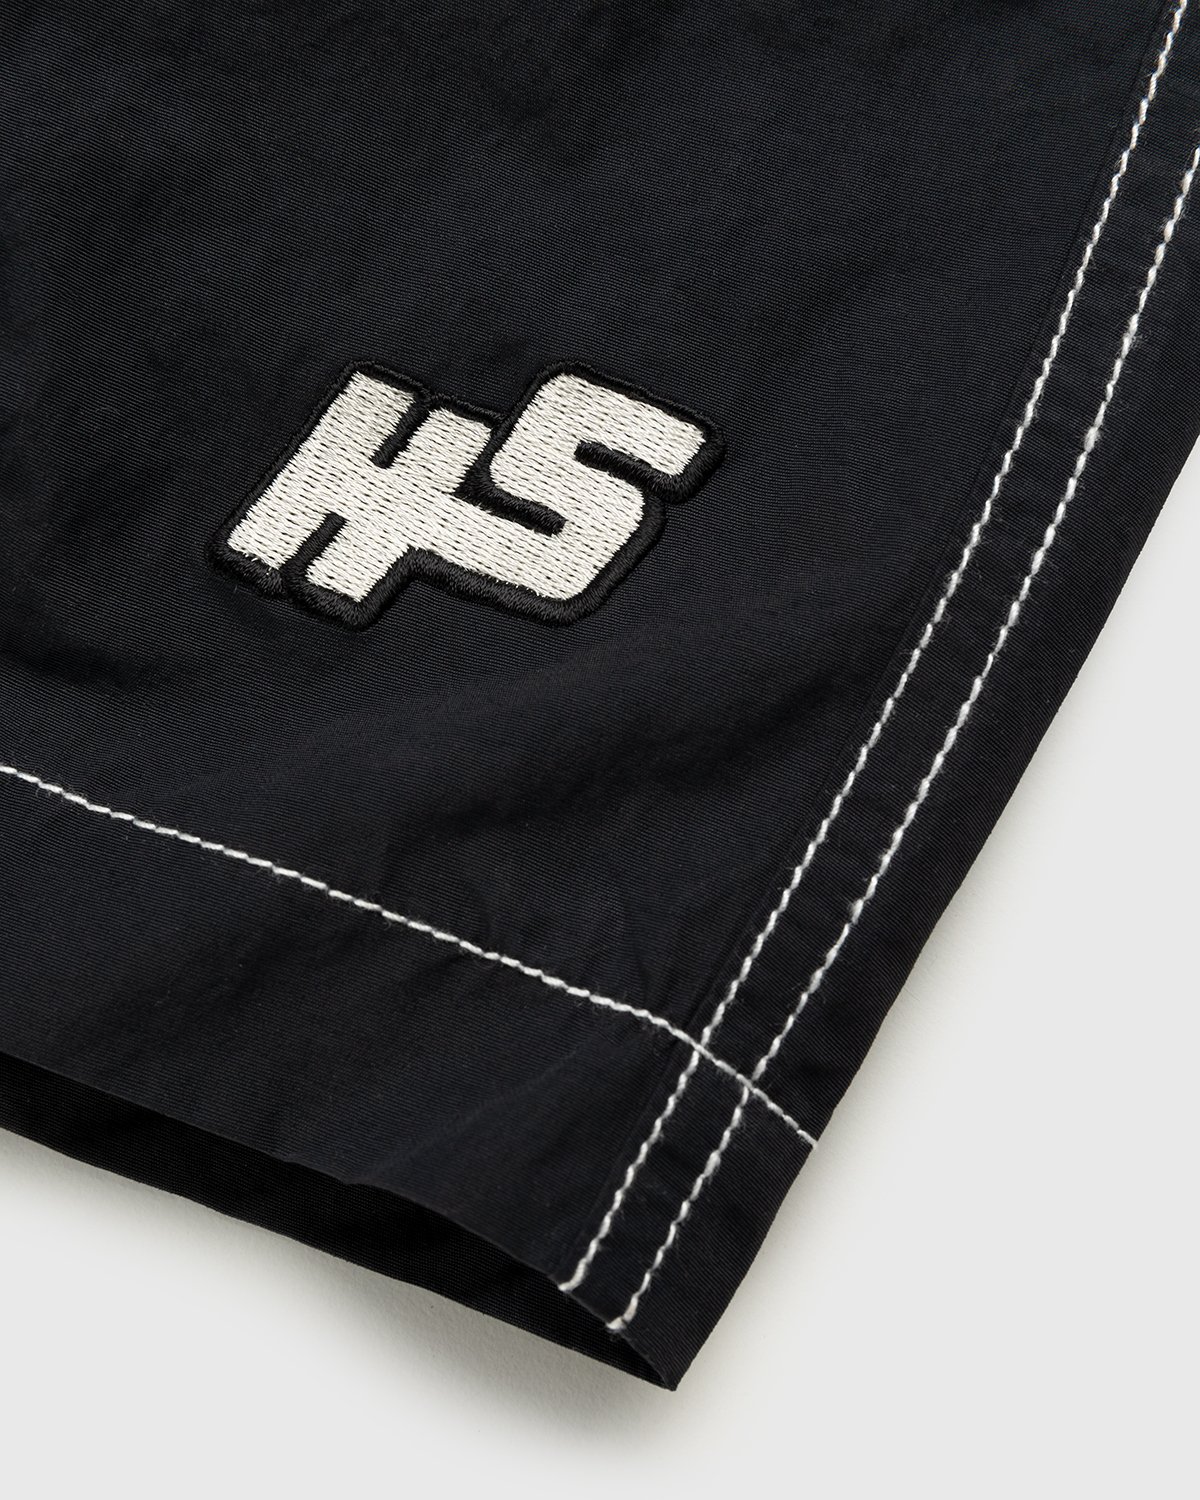 Highsnobiety - Contrast Brushed Nylon Water Shorts Black - Clothing - Black - Image 5